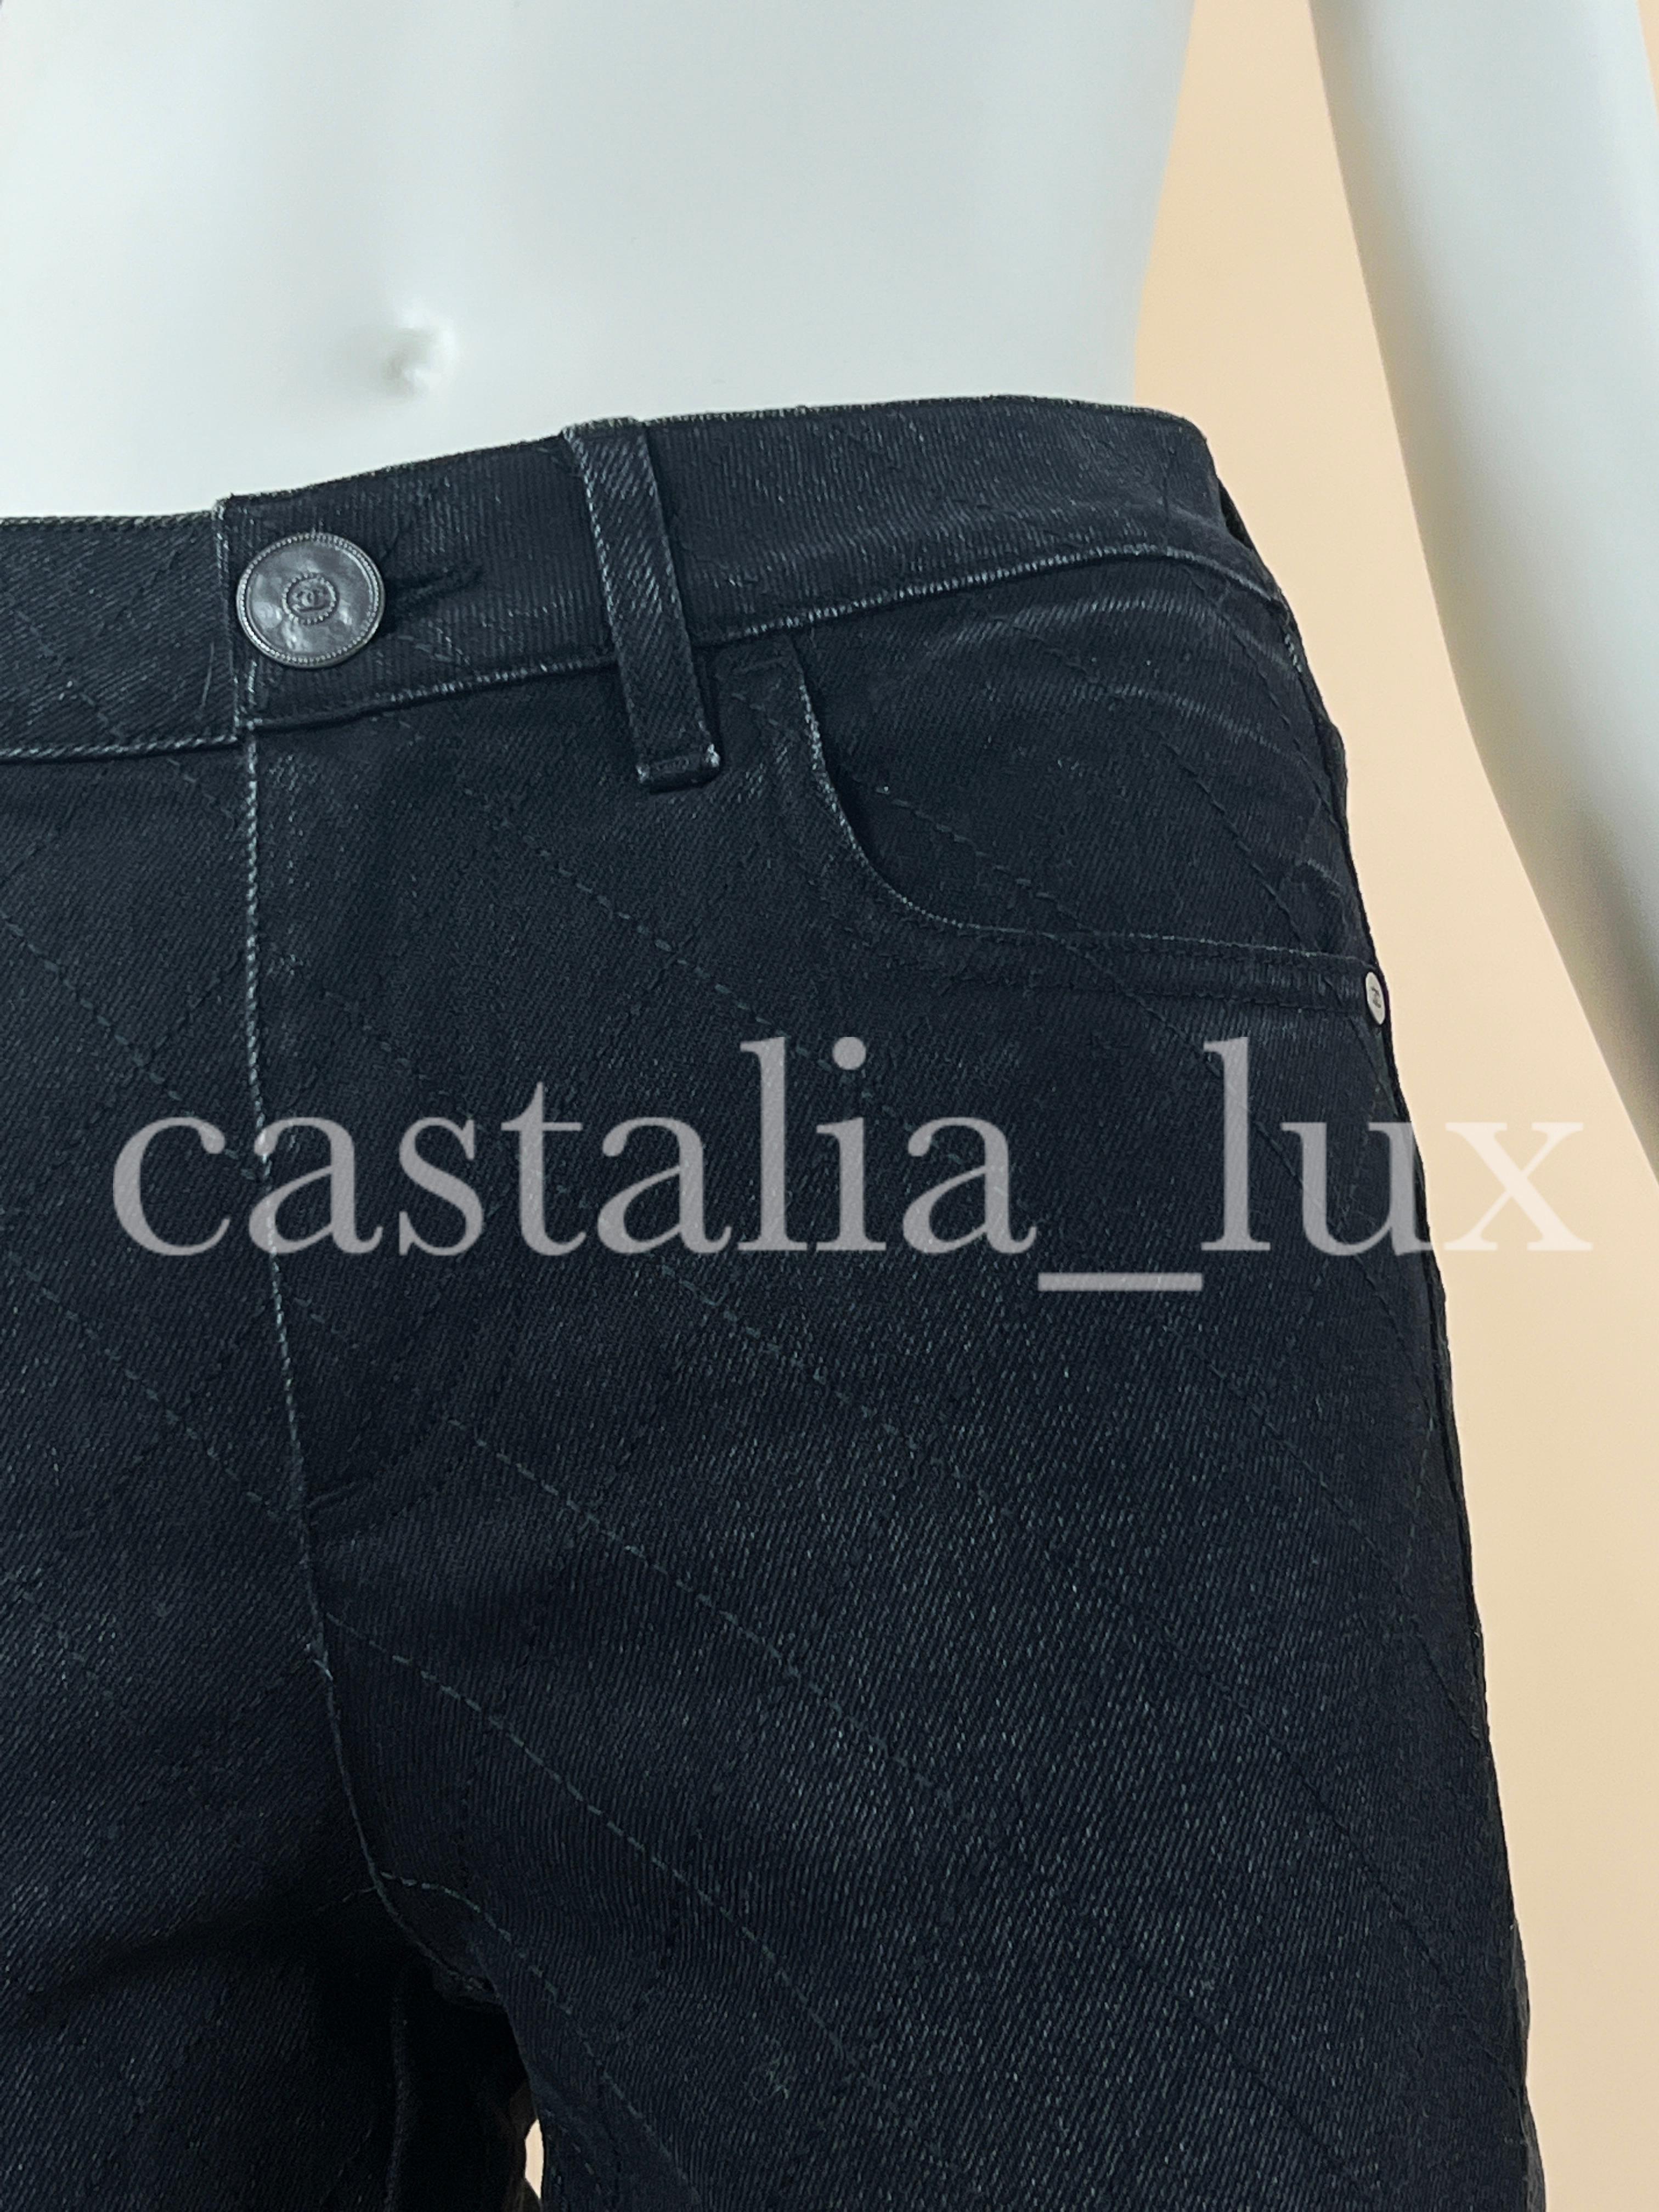 Neue schwarze Chanel-Jeans mit der charakteristischen Rautensteppung aus der Herbstkollektion 2021.
Boutique-Preis 2.200€
- CC-Logo-Knopf und Nieten
Größenbezeichnung 36 FR.
